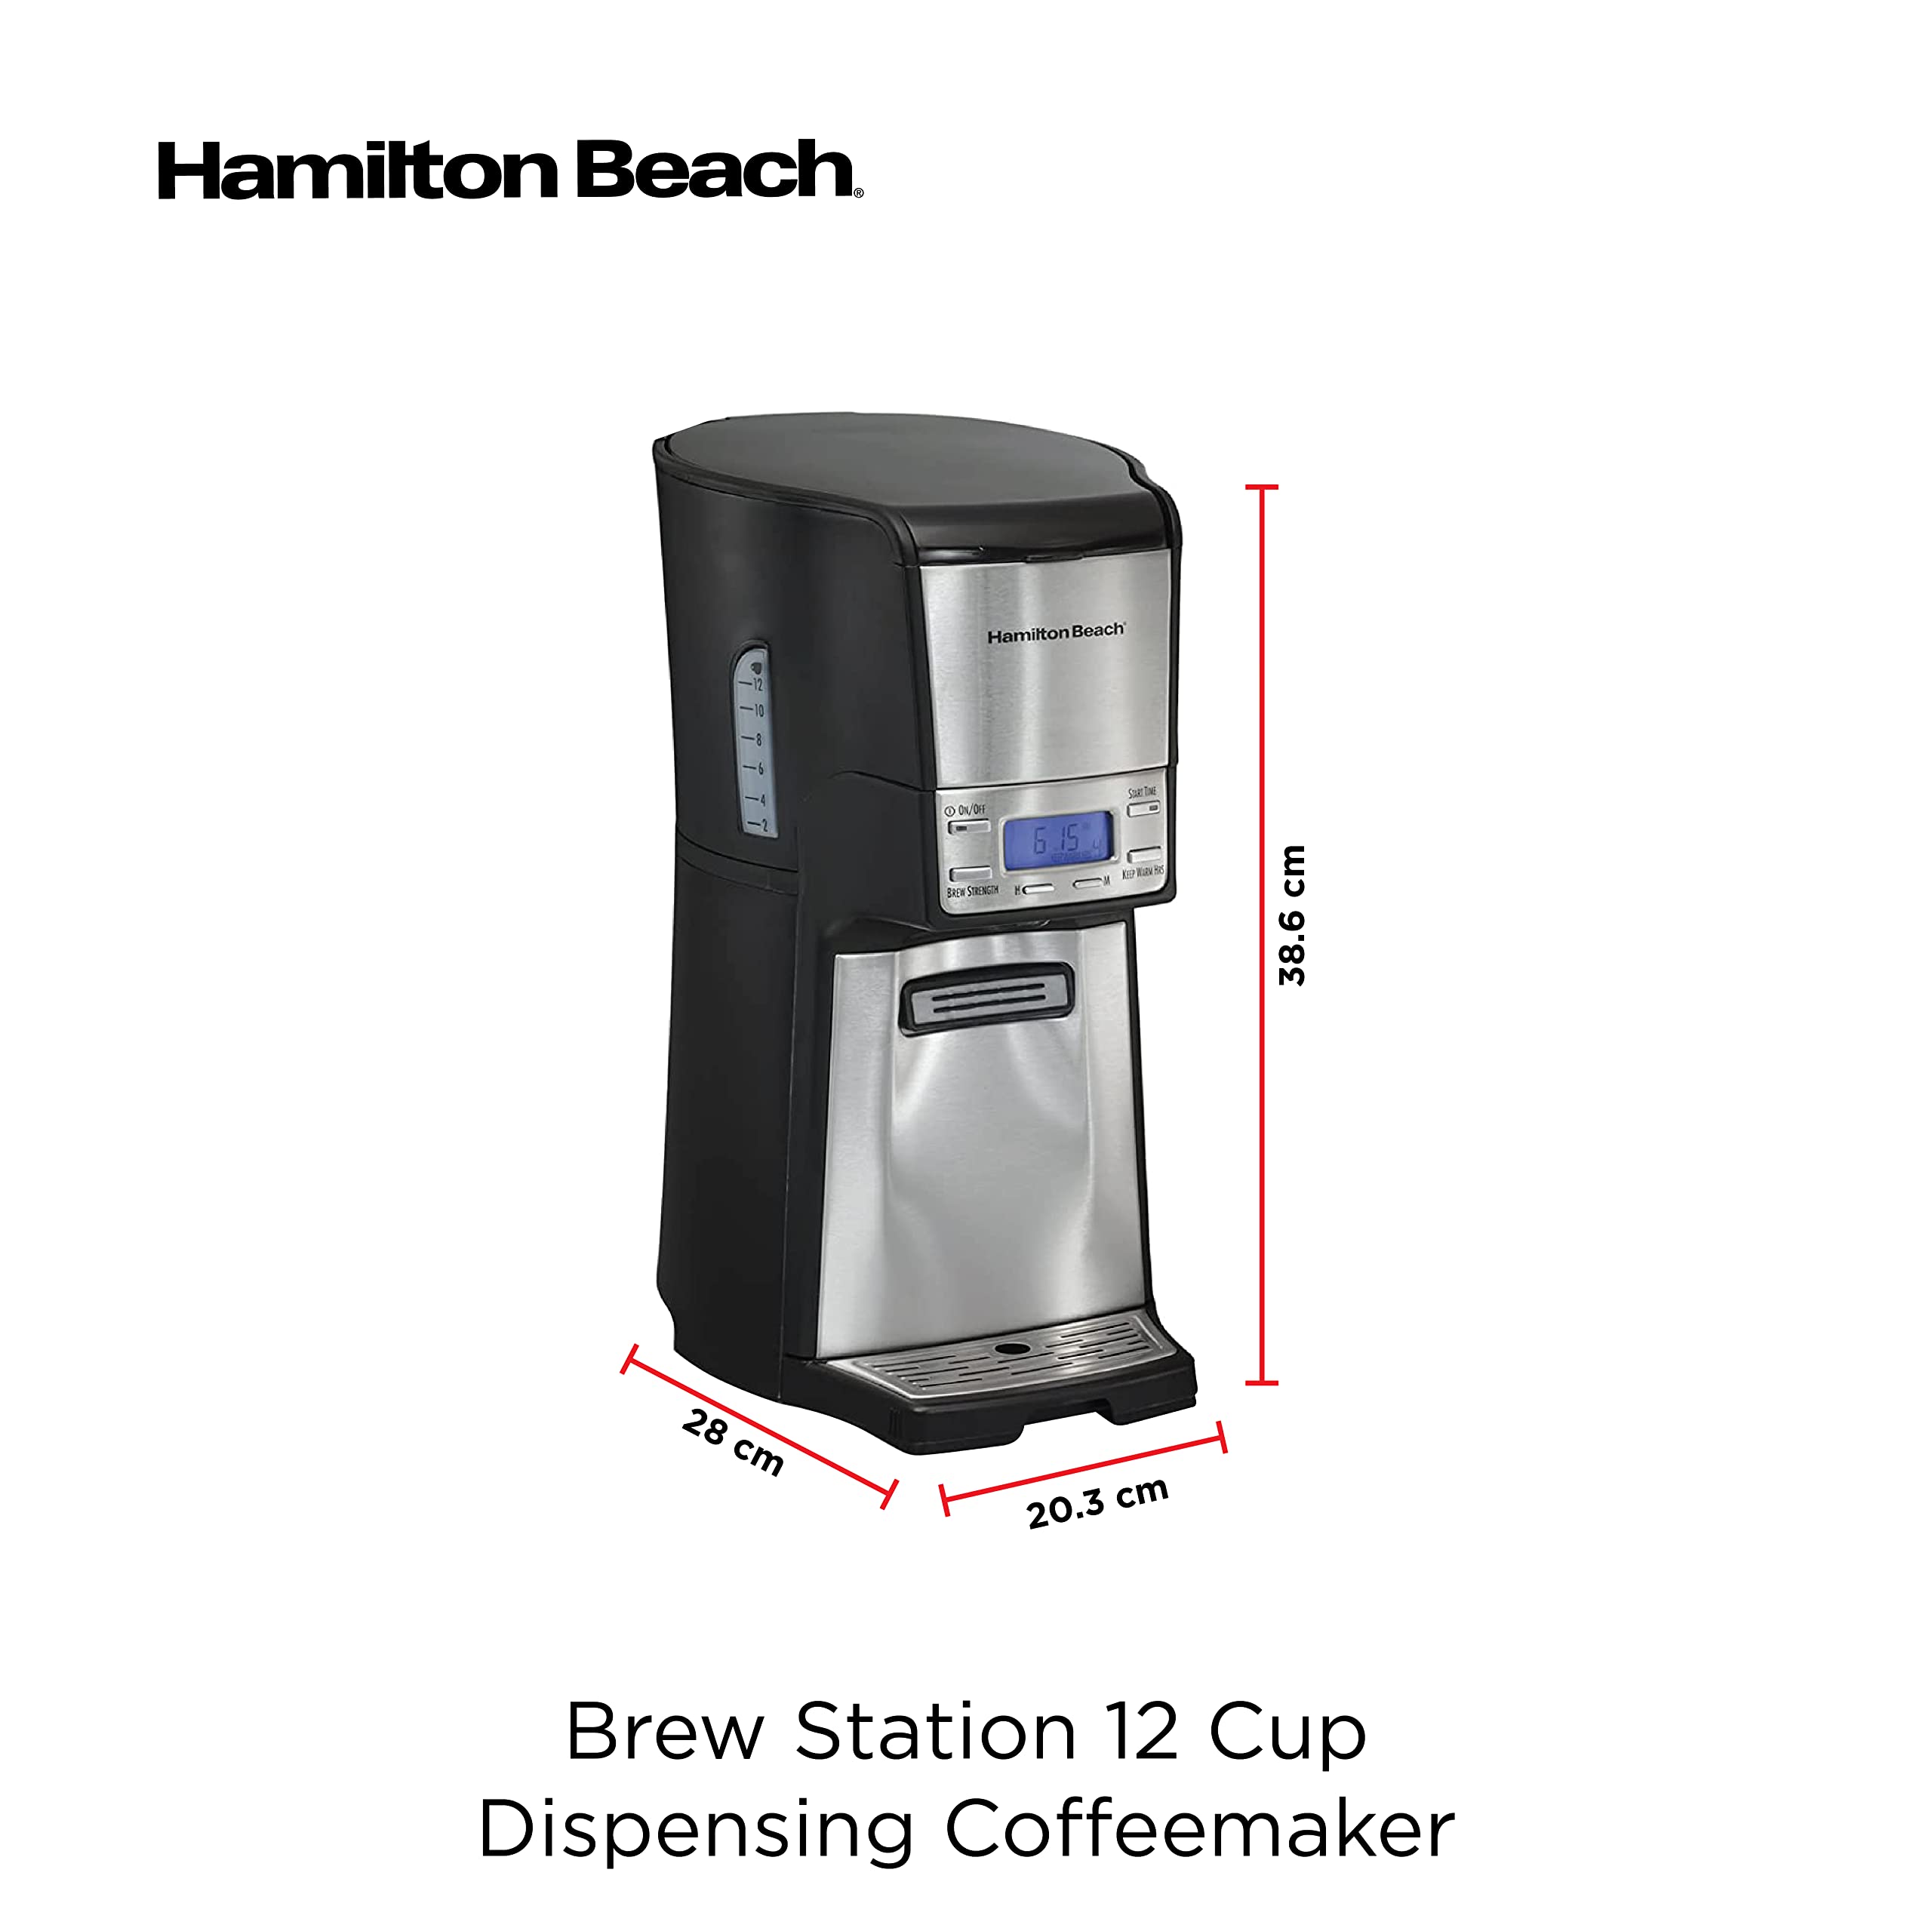 Hamilton Beach 12 cup Programmable Drip Coffee Maker with Auto Shutoff, Easy Dispensing with No Carafe, 950 watts  ماكينة تحضير القهوة قابلة للبرمجة وتغلق تلقائيا ومجهزة بزر تحضير سعة 12 كوب